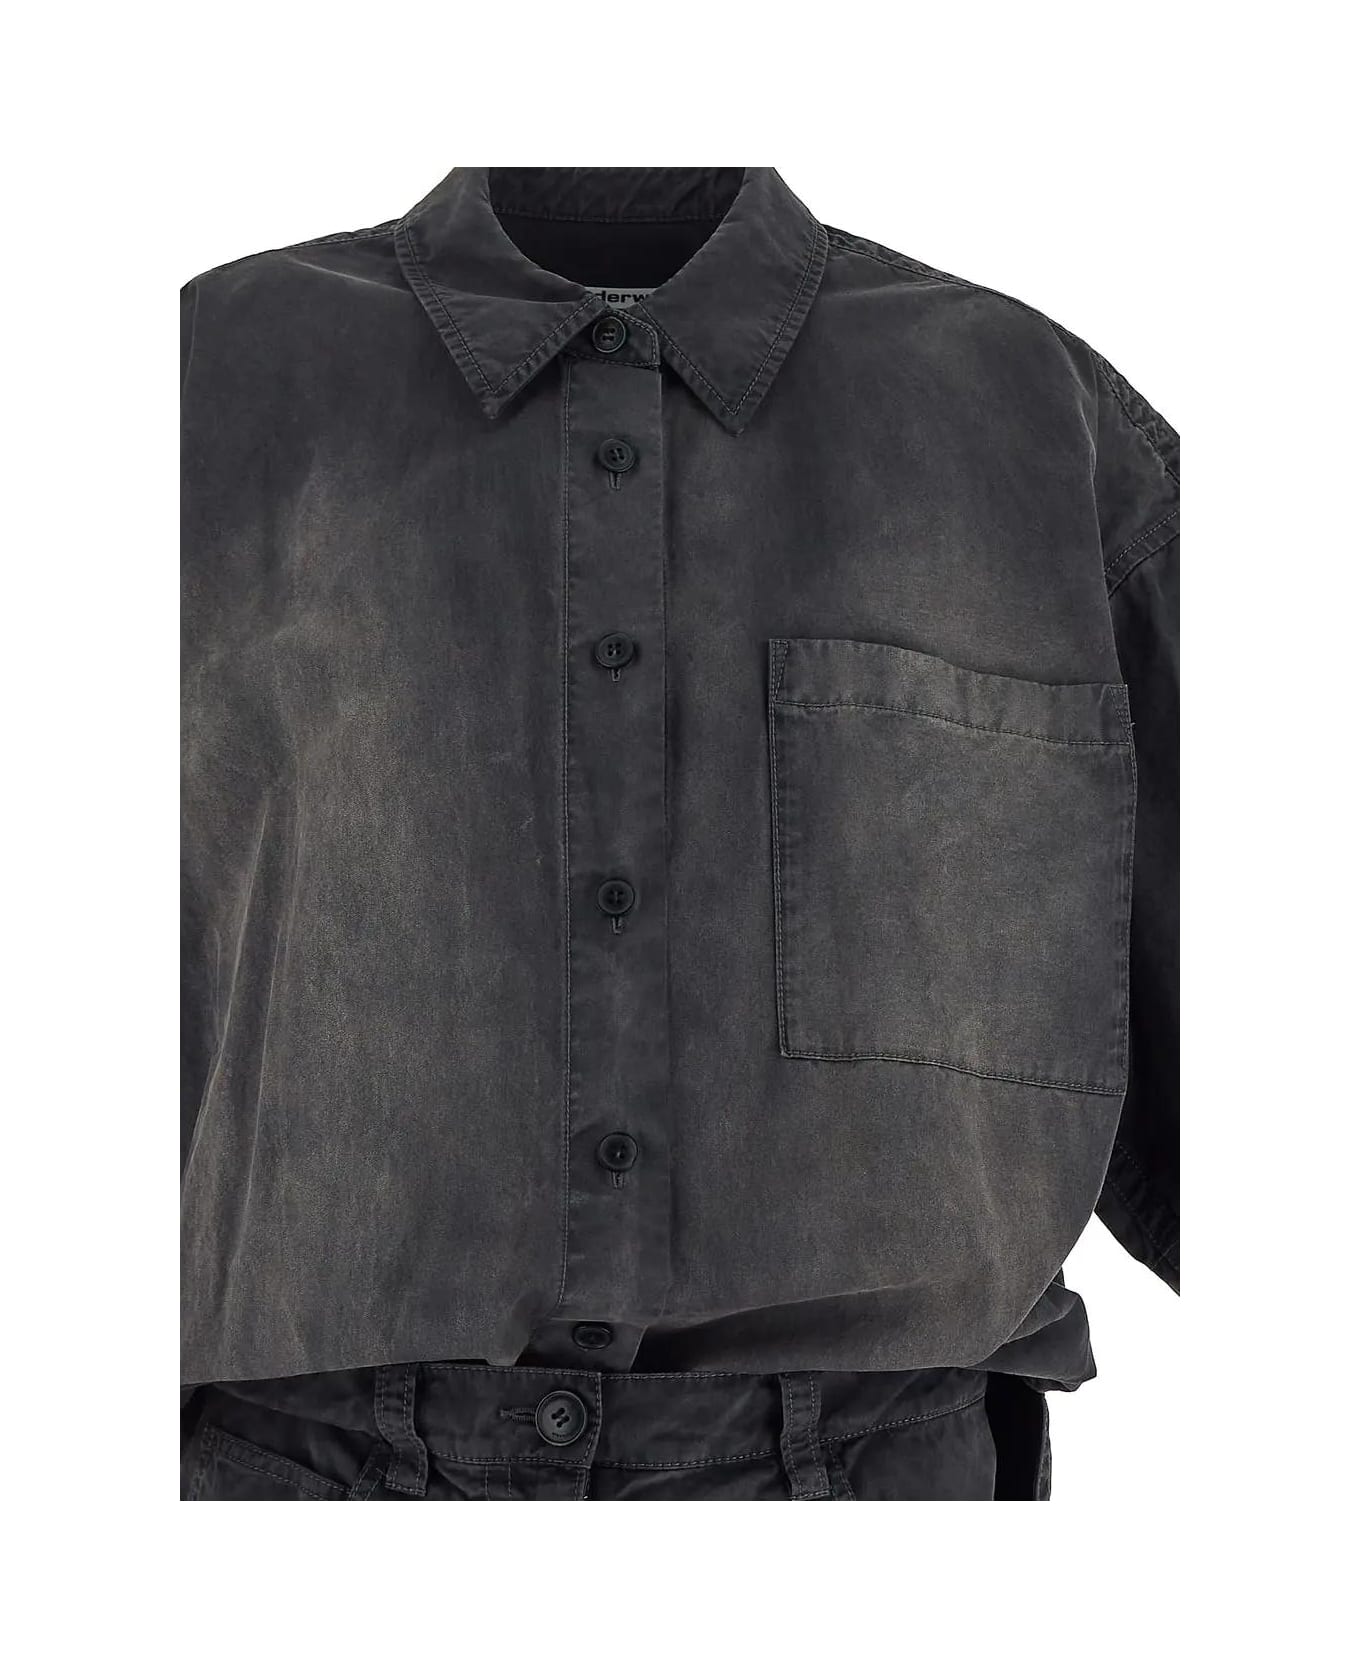 Alexander Wang Shirt Dress - A Washed Black Pearl